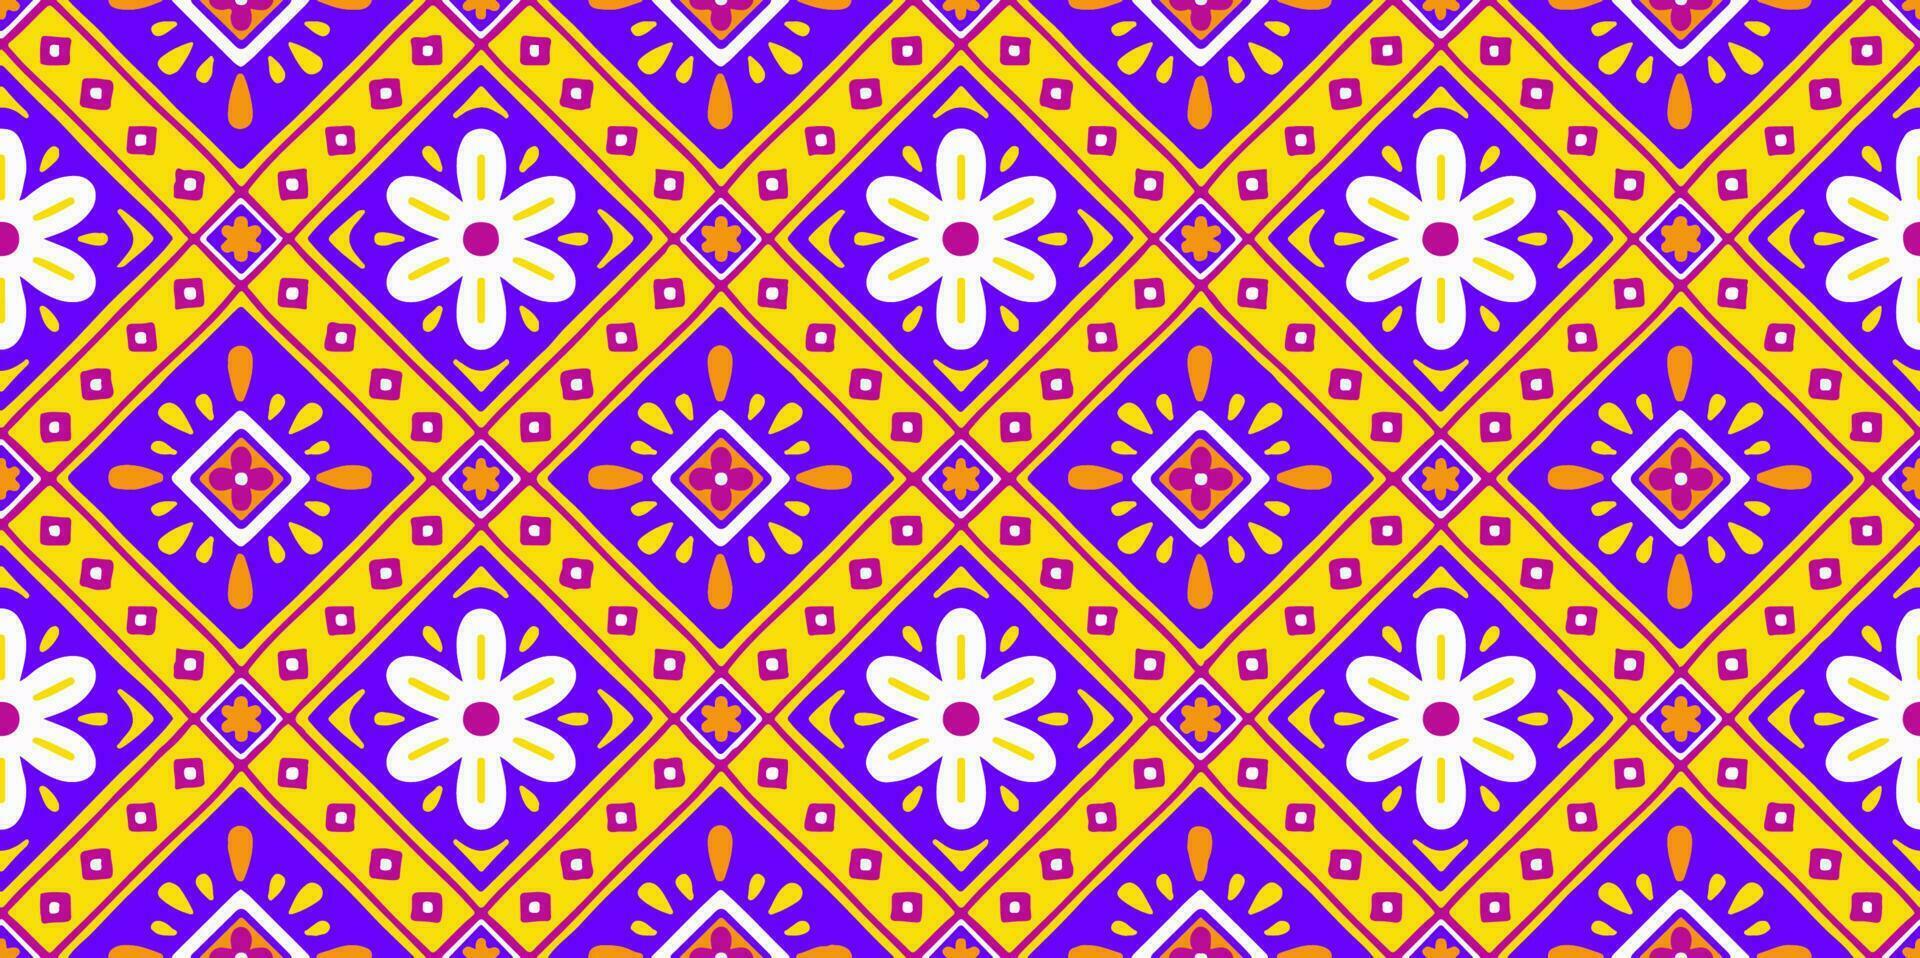 étnico resumen antecedentes linda amarillo Violeta margarita flor geométrico tribal gente motivo oriental nativo modelo tradicional diseño alfombra fondo de pantalla ropa tela envase impresión batik gente vector